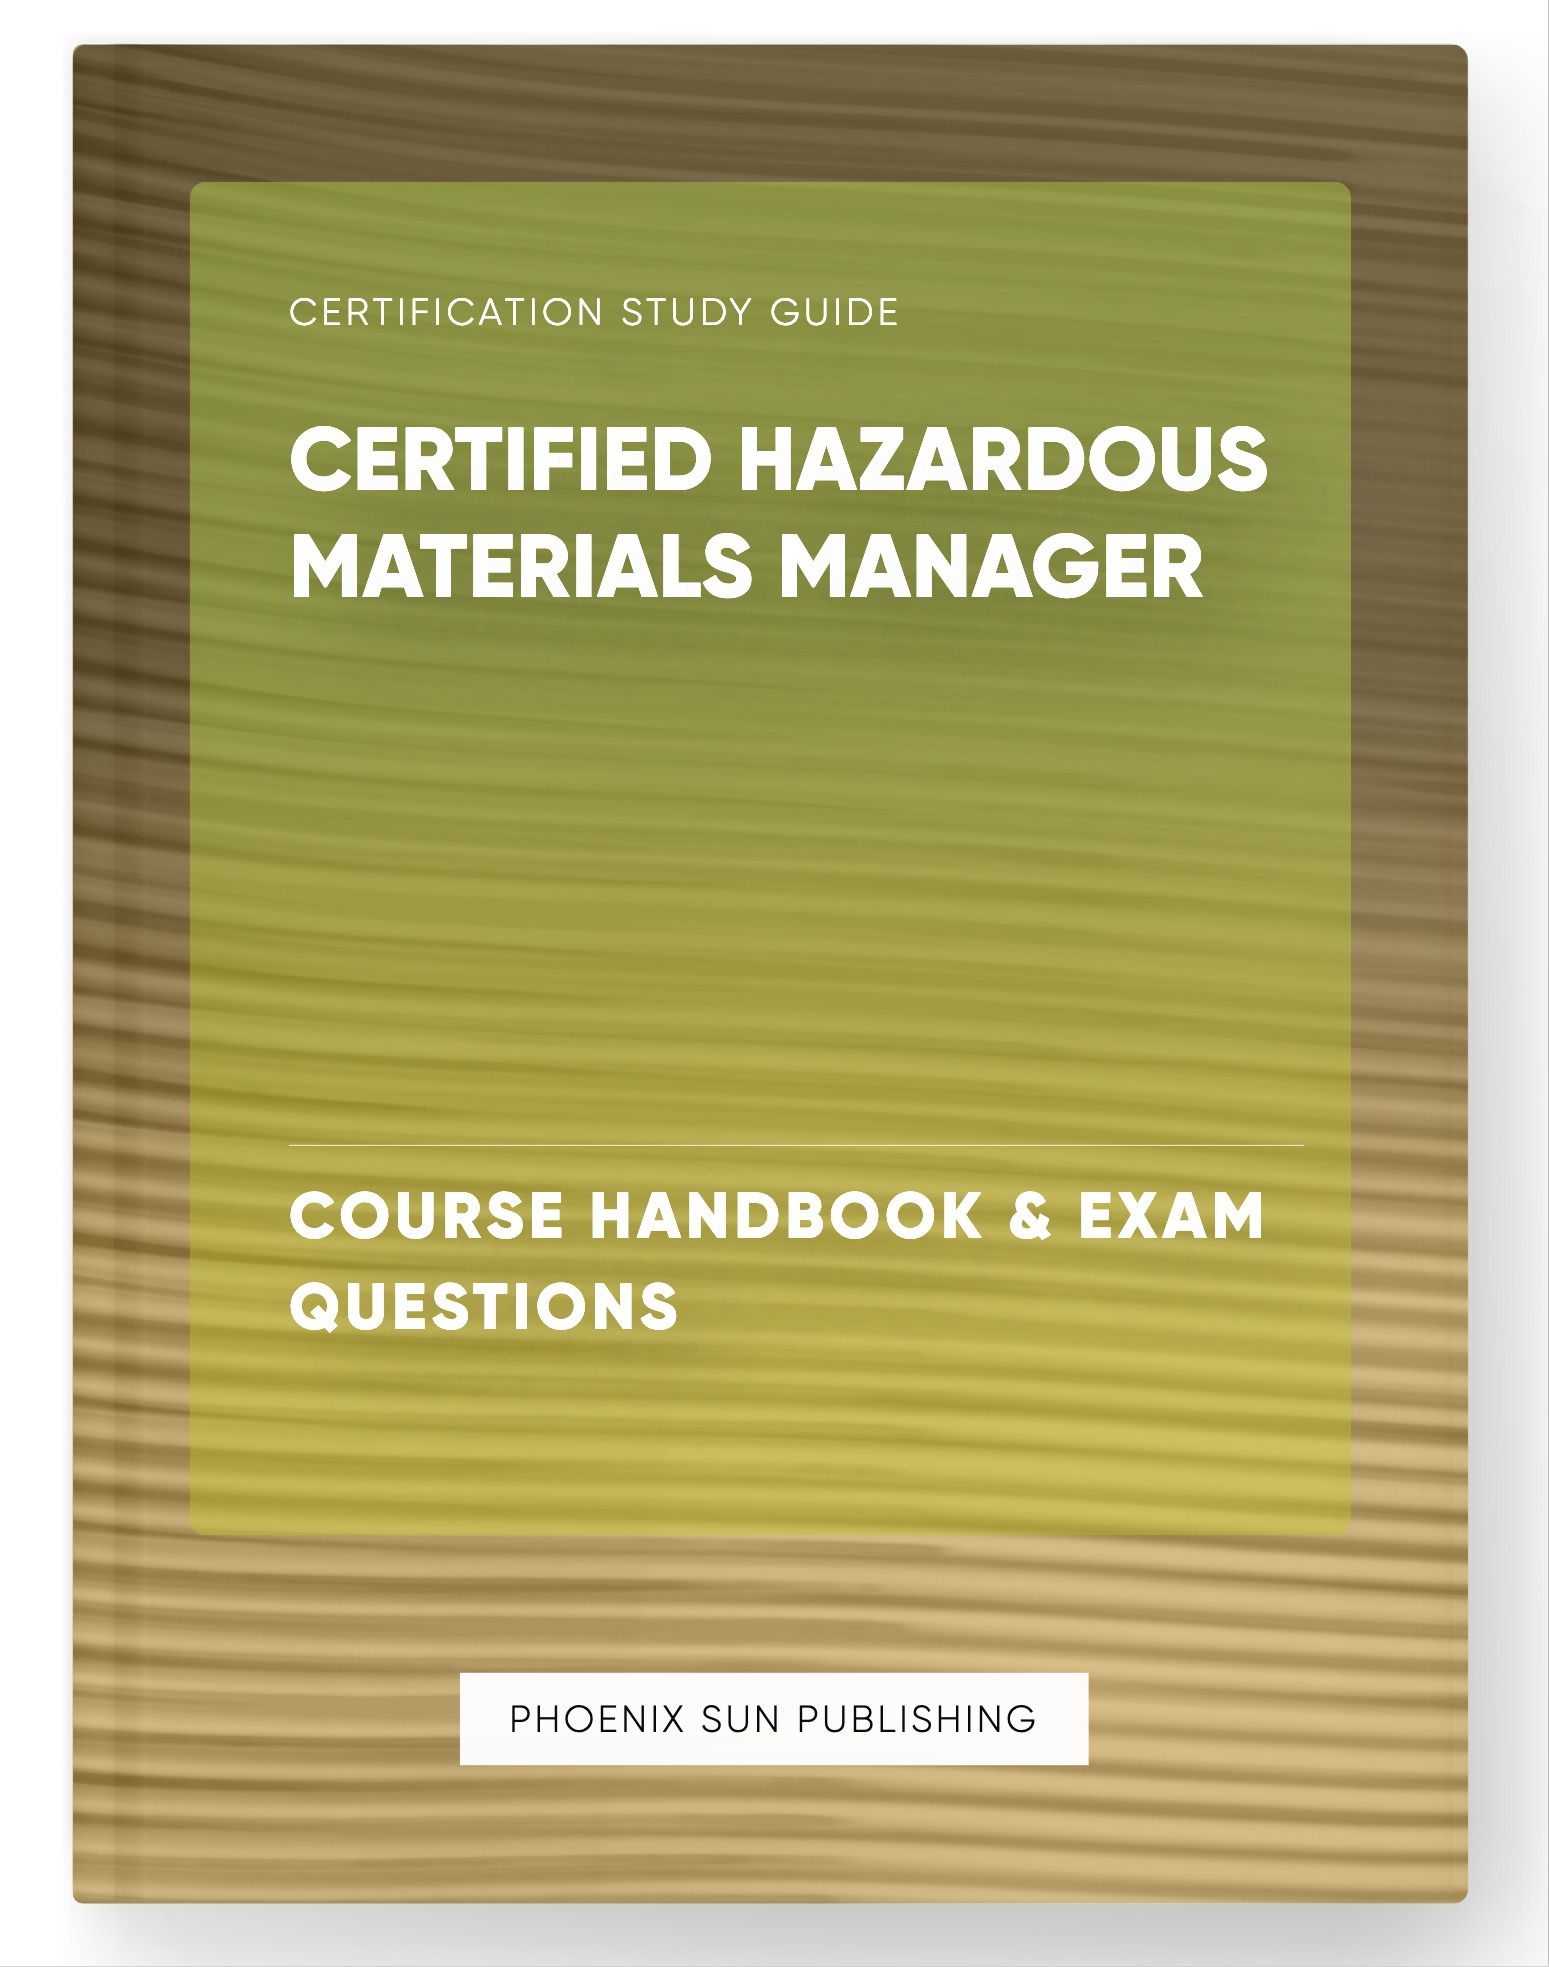 Certified Hazardous Materials Manager - Course Handbook & Exam Questions - Imagen 1 de 1